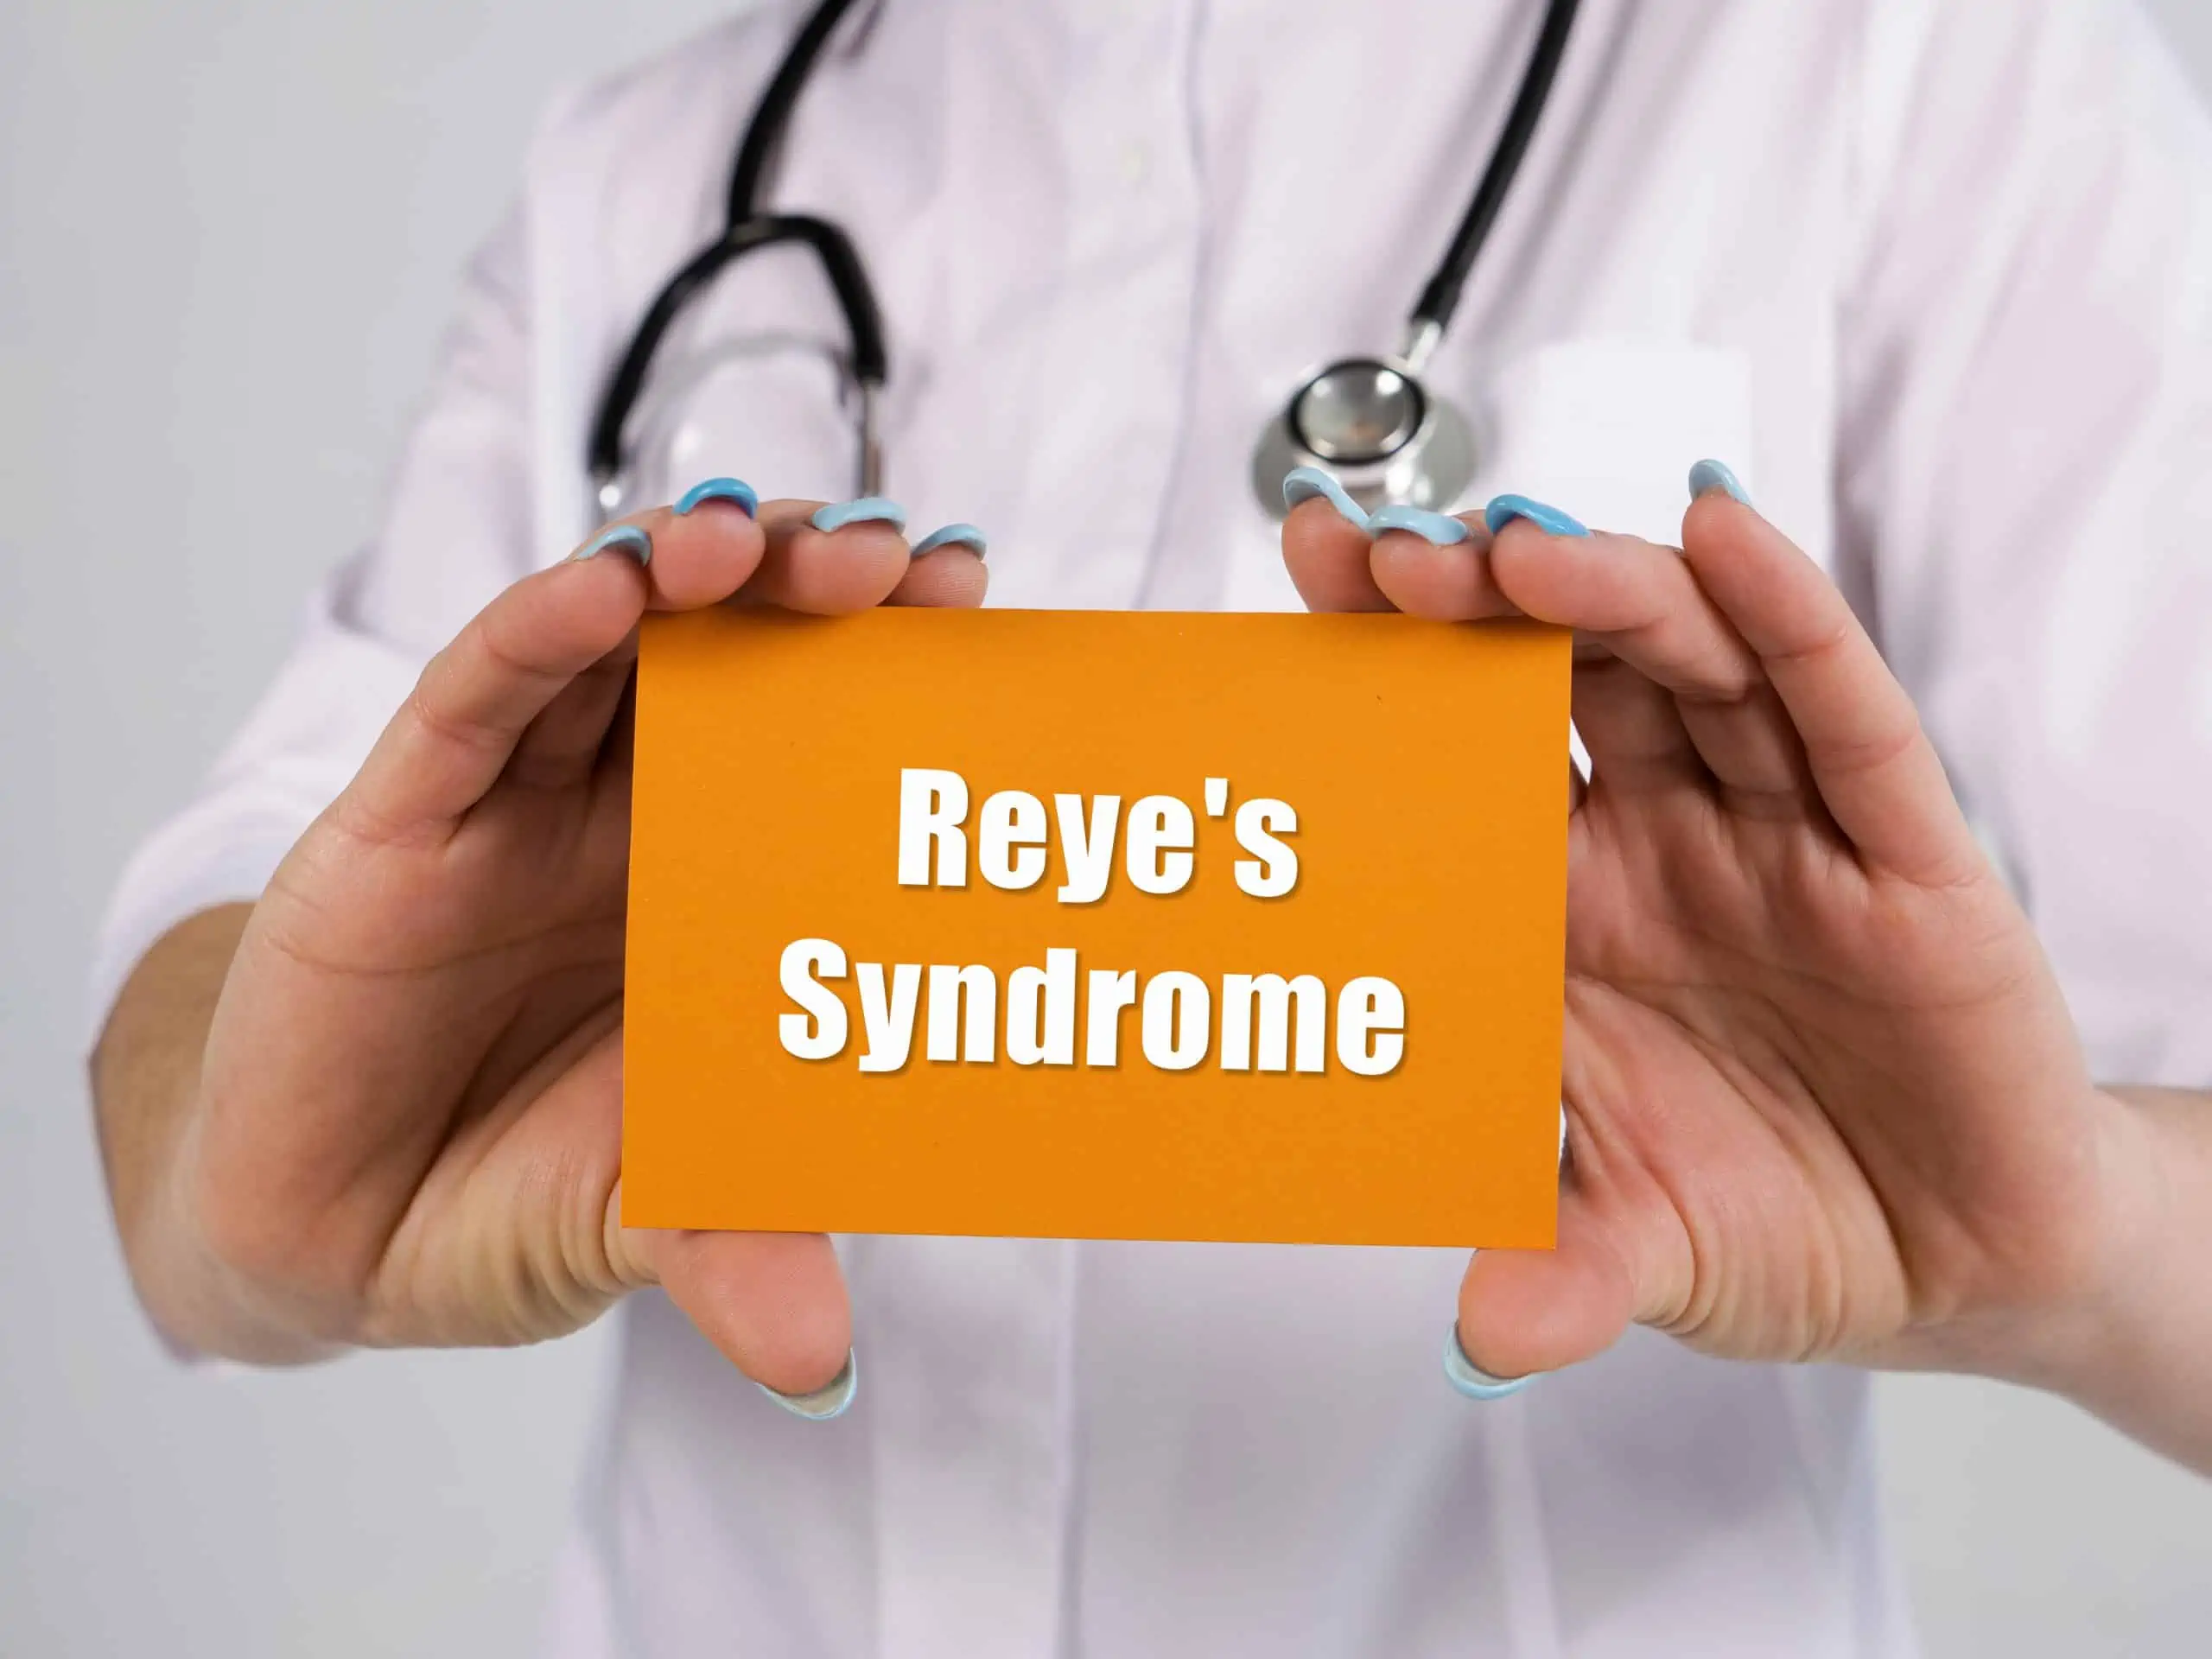 reyev sindrom - uzrok, simptomi, liječenje